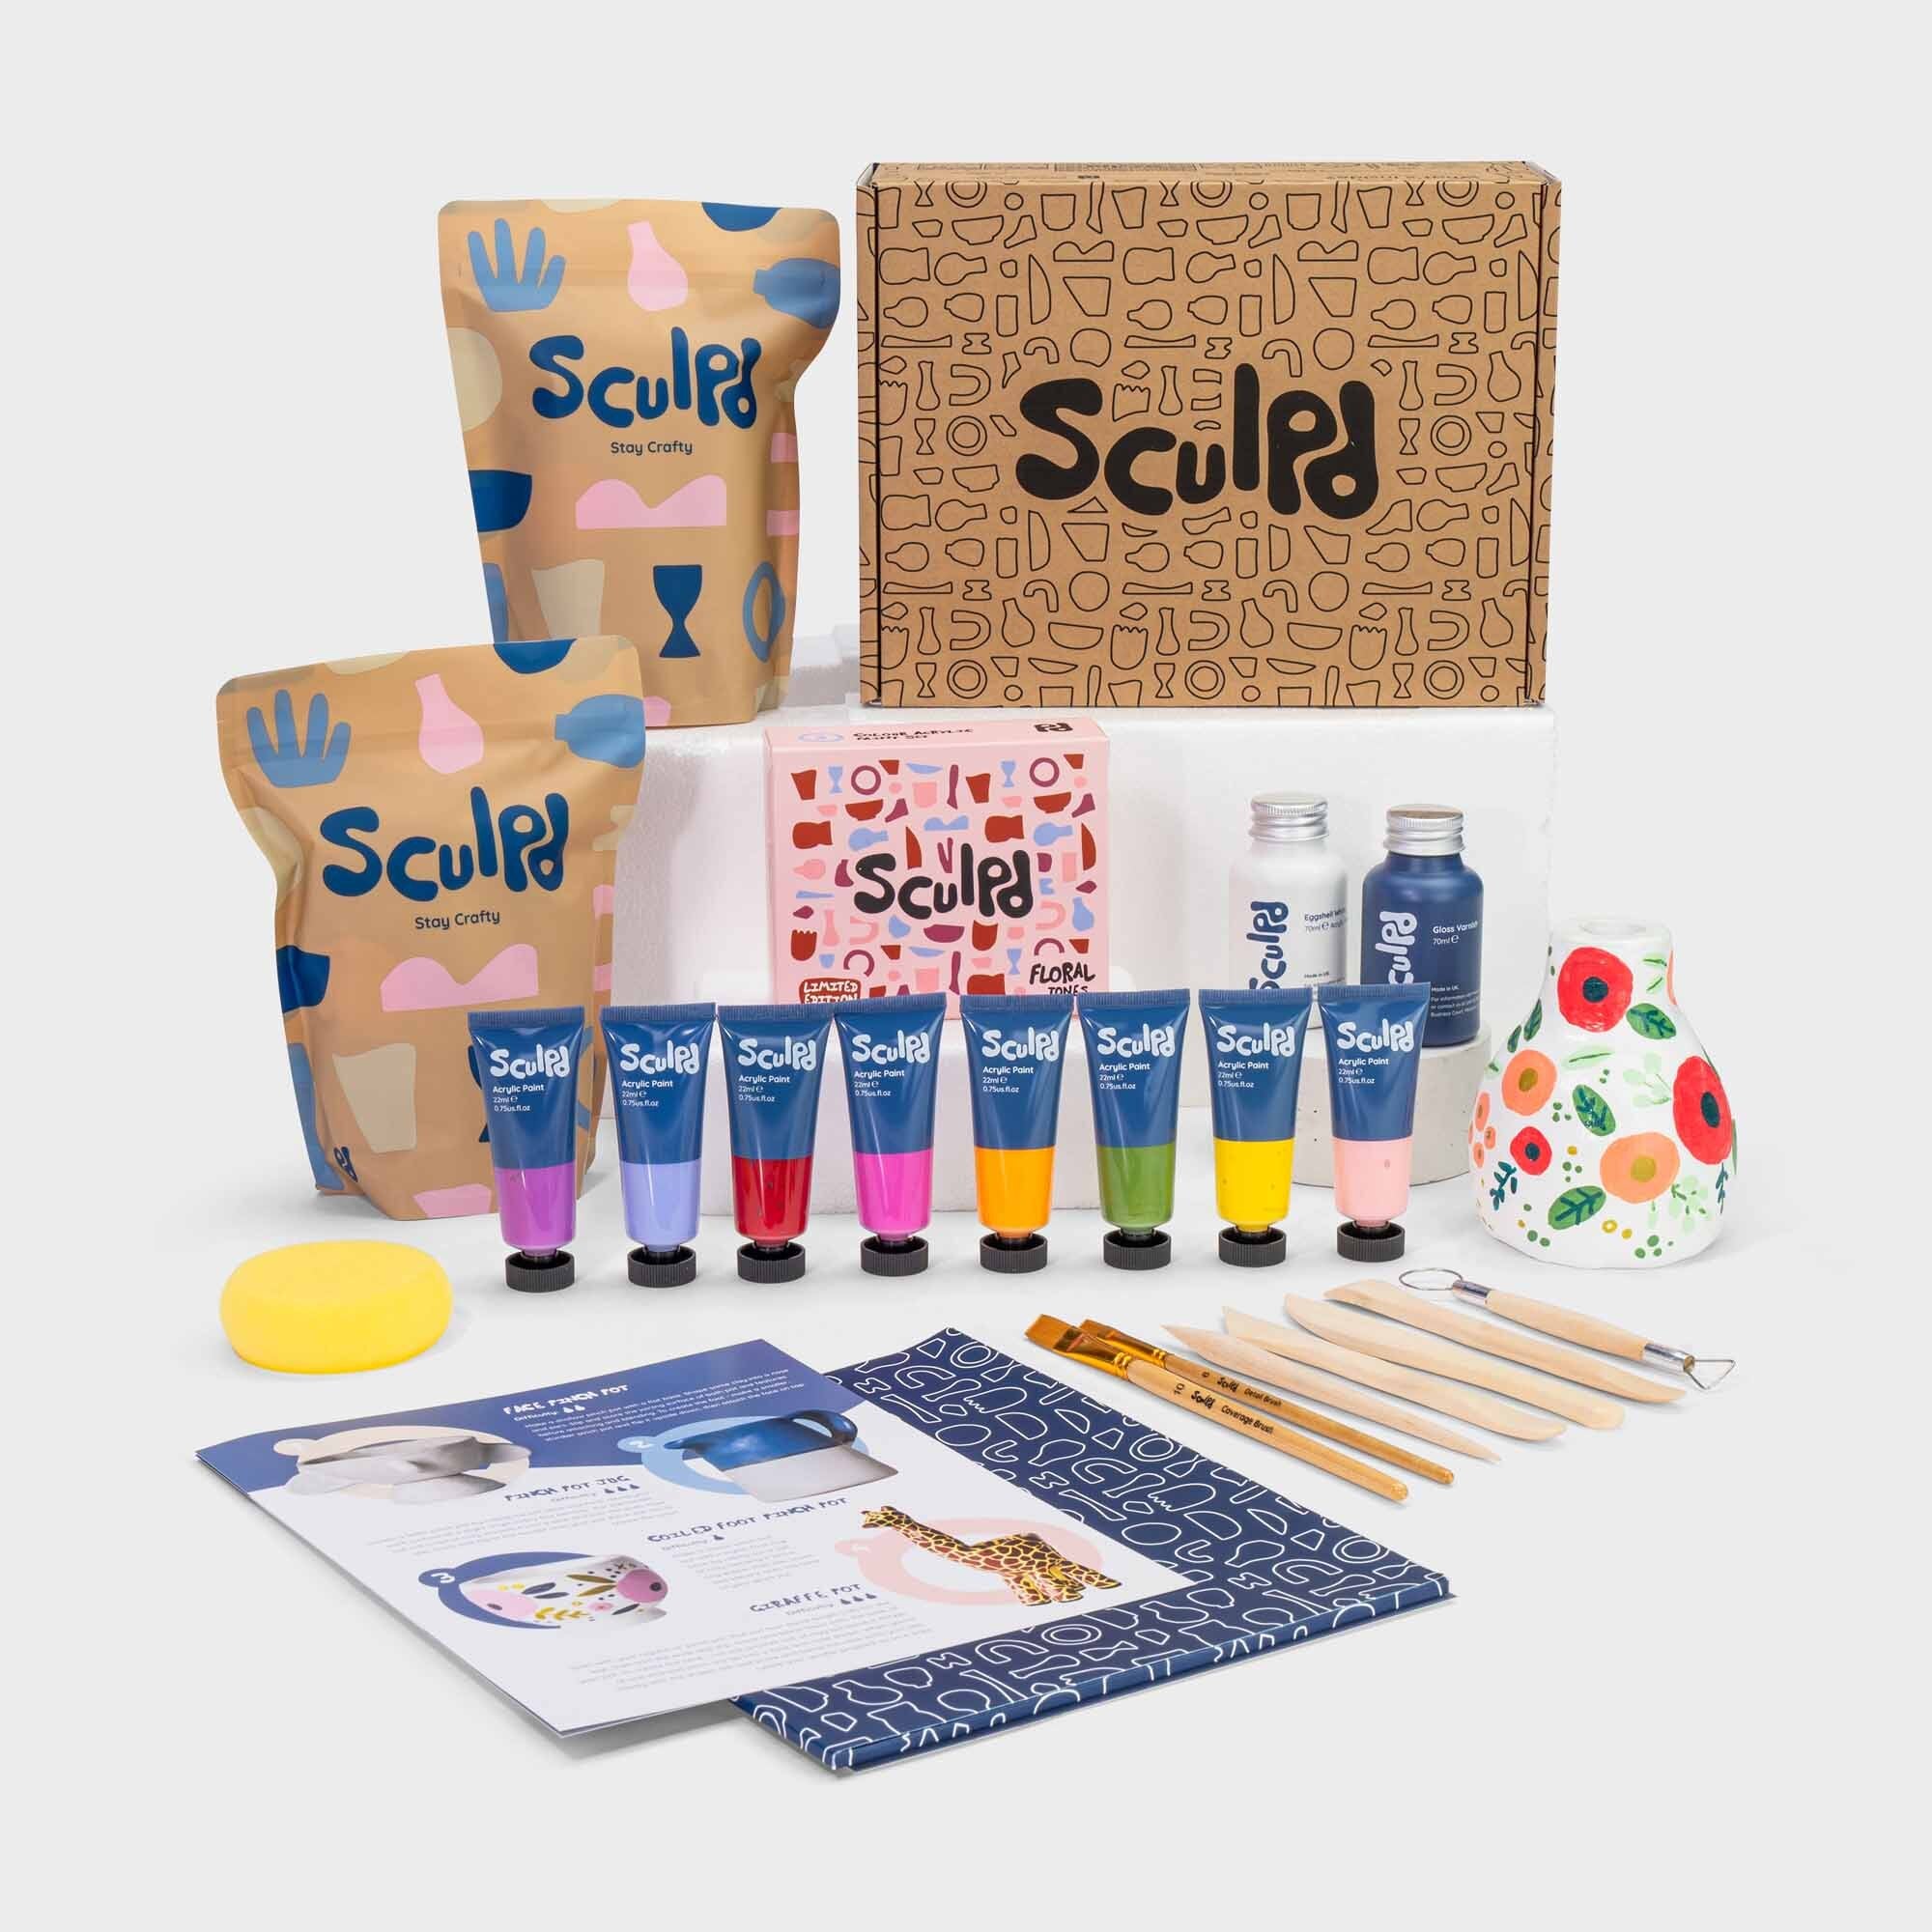 Ankorstore x Sculpd - Sculpd Pottery Kit and Floral Tones Paint Set